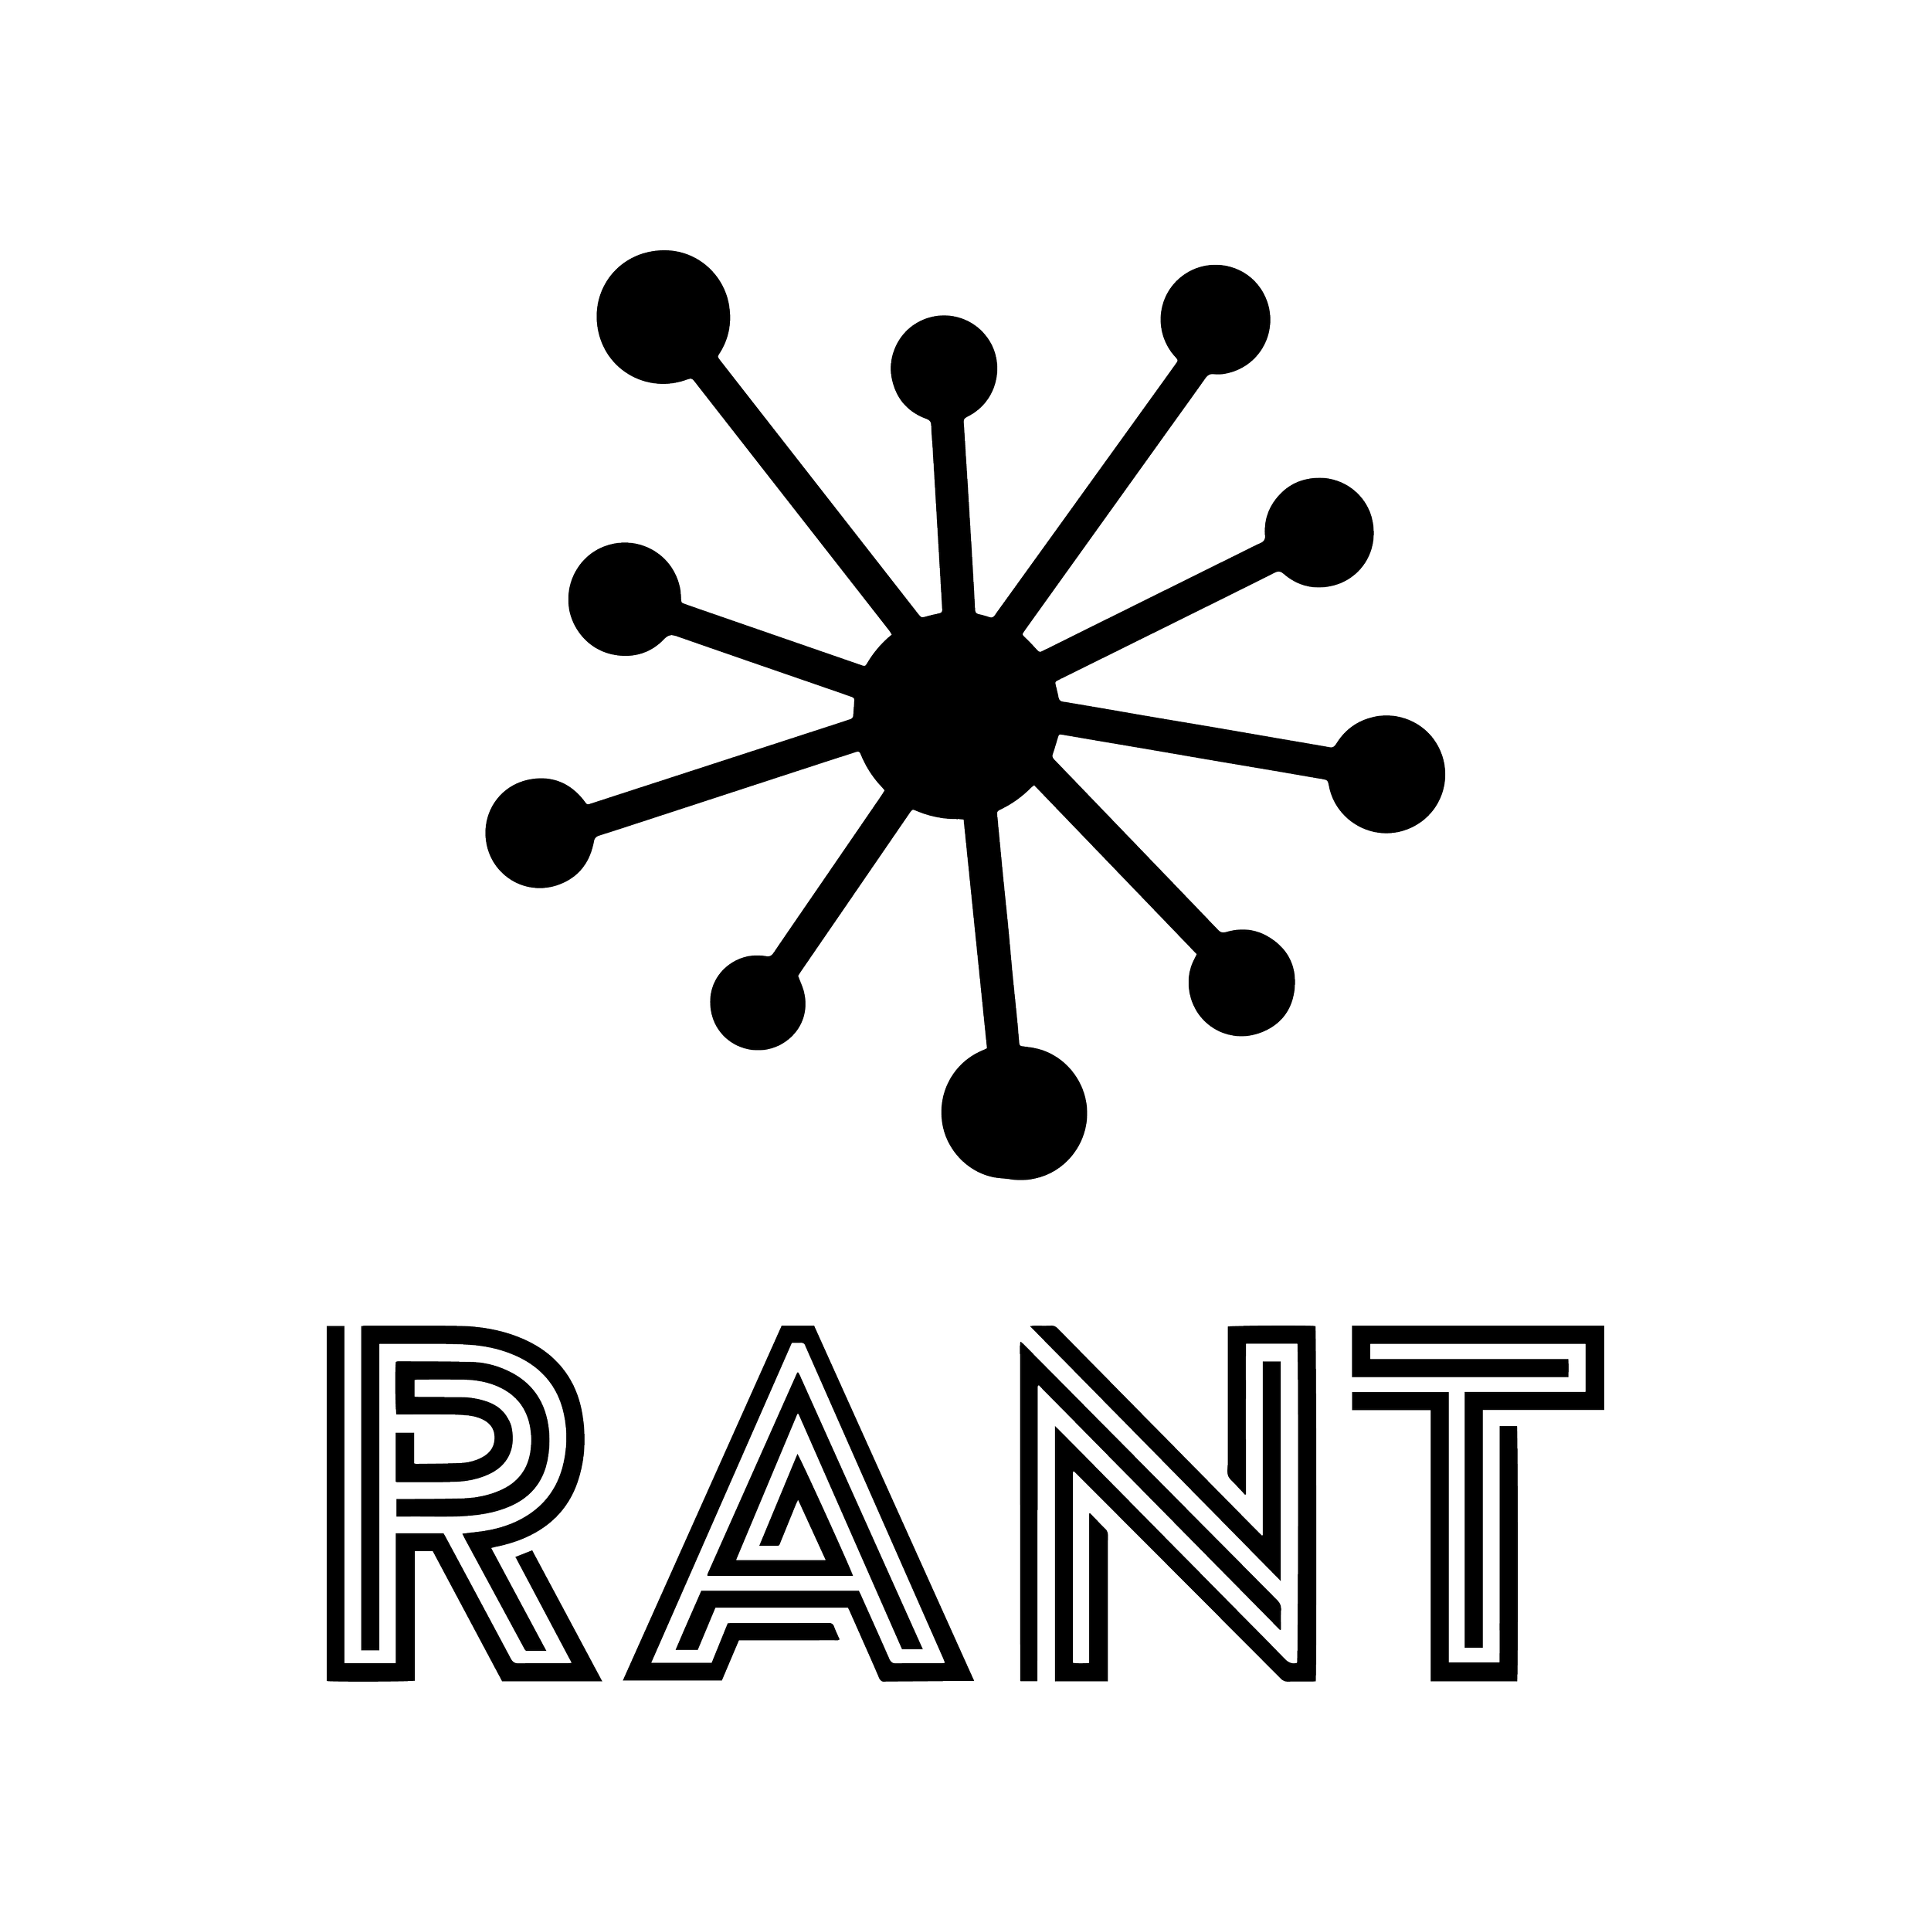 RANT+logo_transparent_background.png